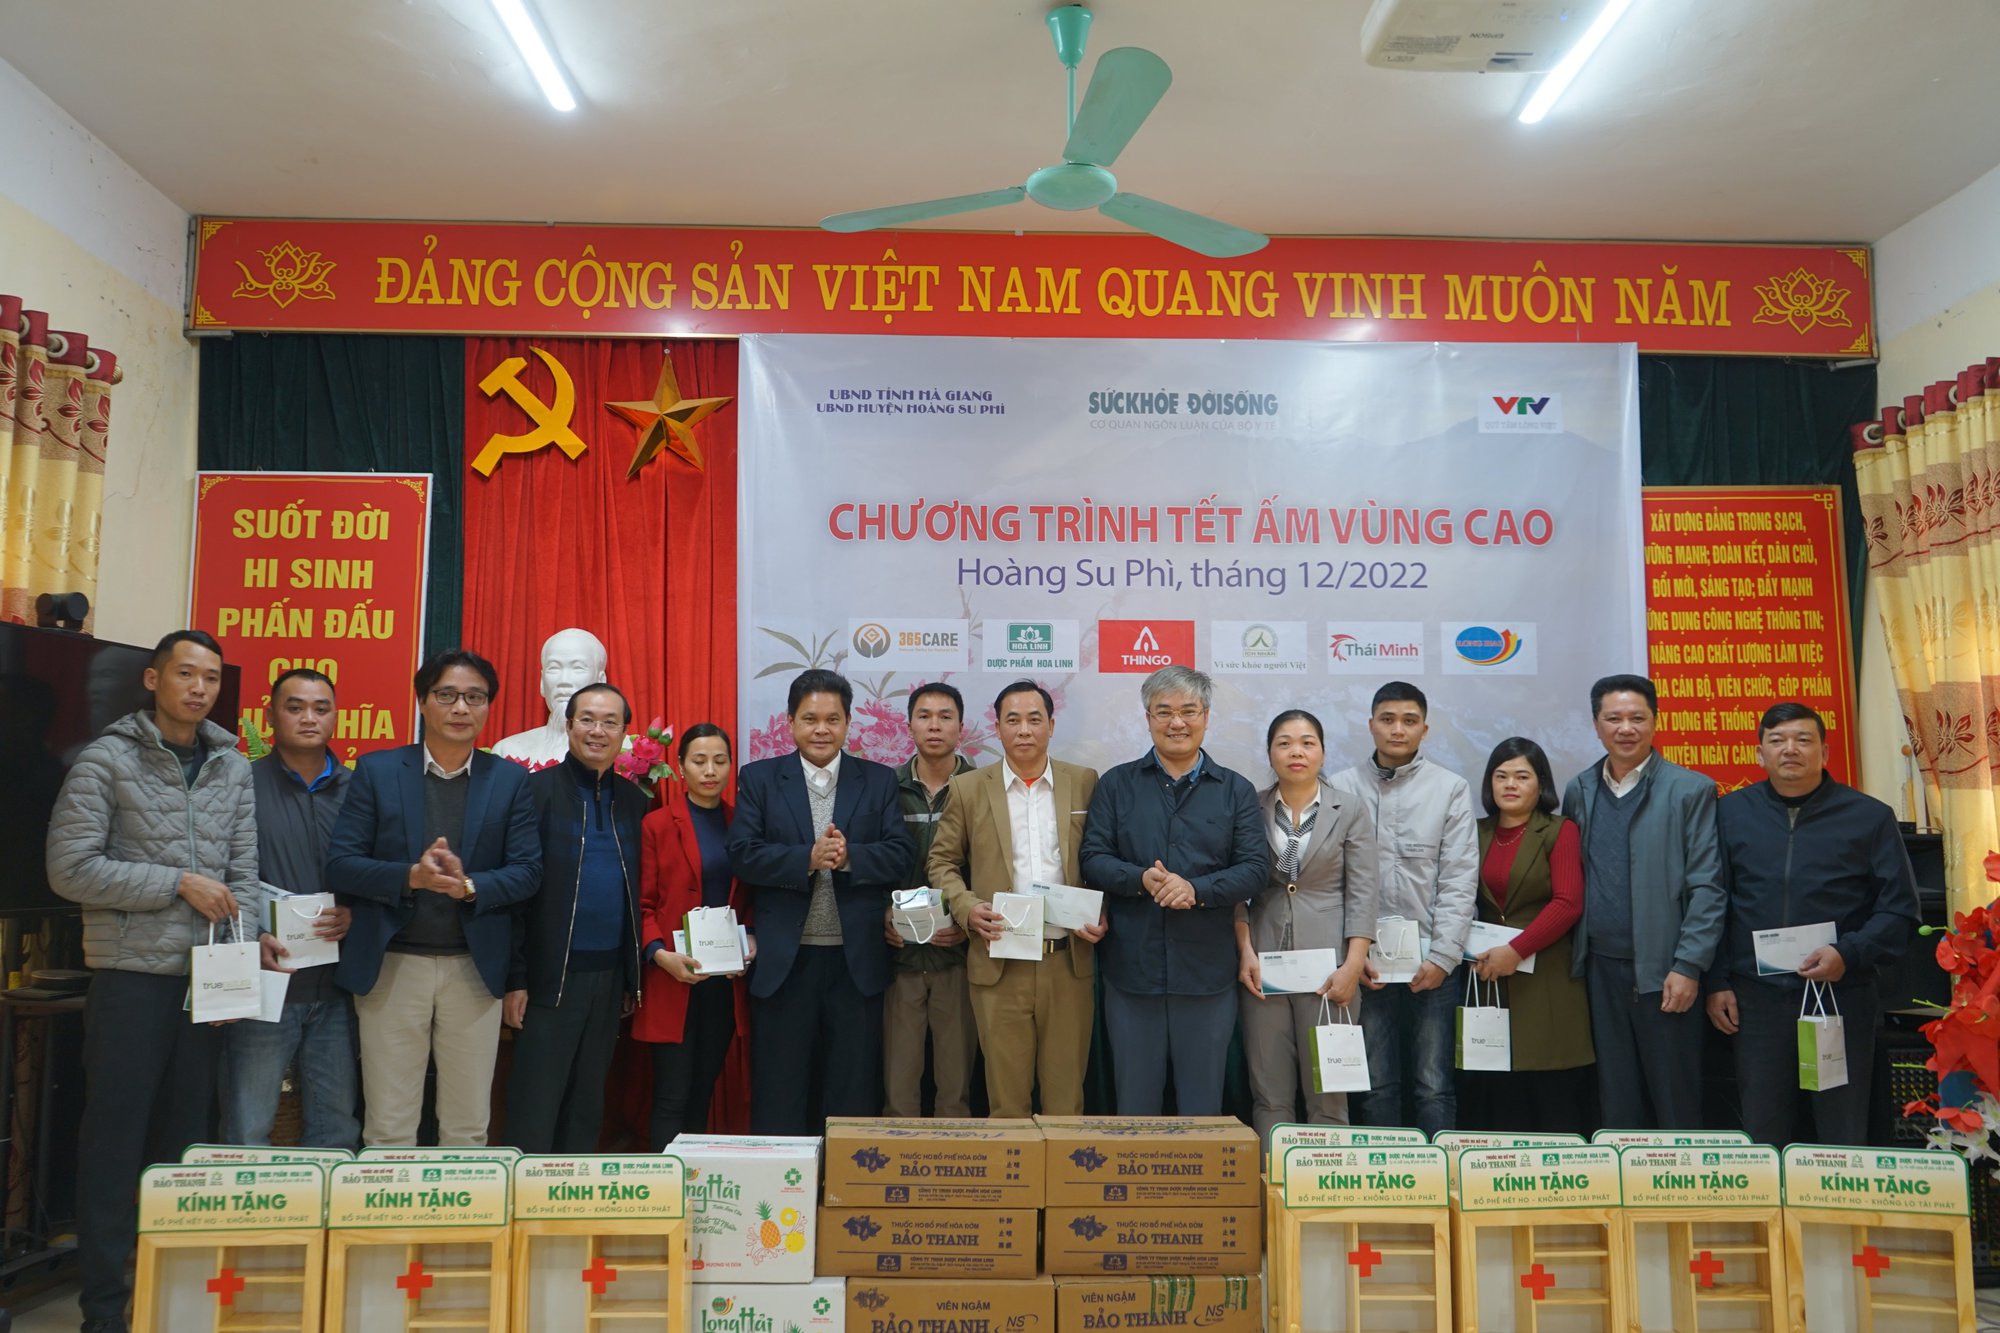 Chương trình thiện nguyện “Tết ấm vùng cao” trao và tặng quà cho 10 trạm y tế của huyện Hoàng Su Phì - Ảnh 5.